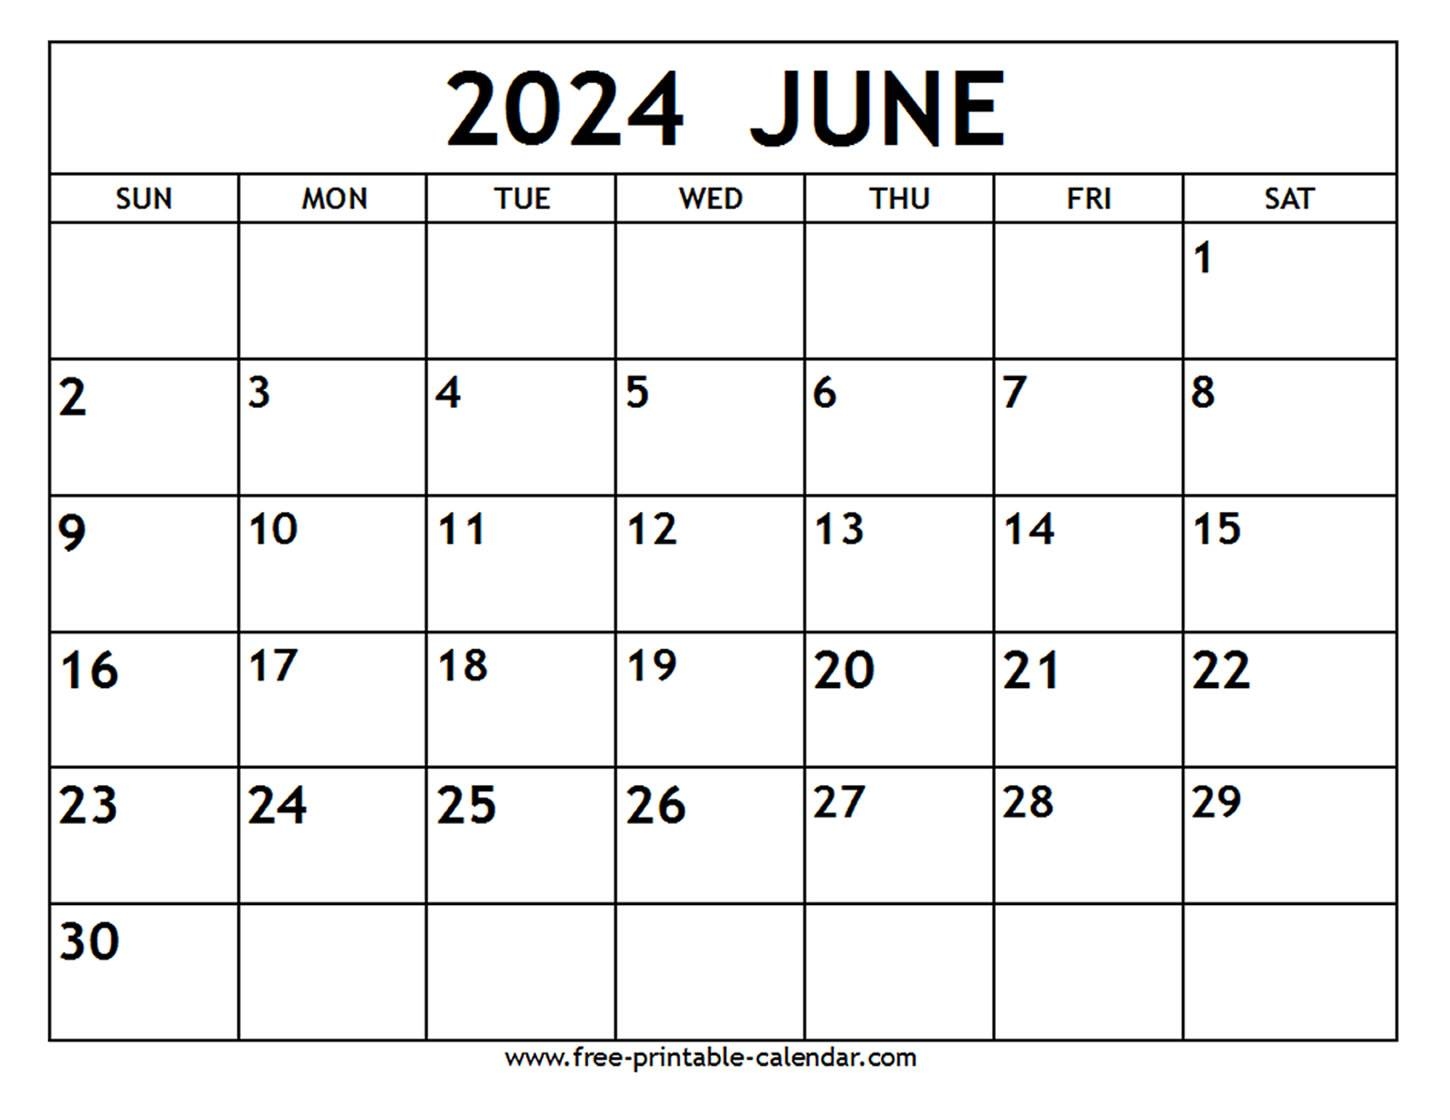 June 2024 Calendar - Free-Printable-Calendar in Free Printable Calendar 2024 June Word